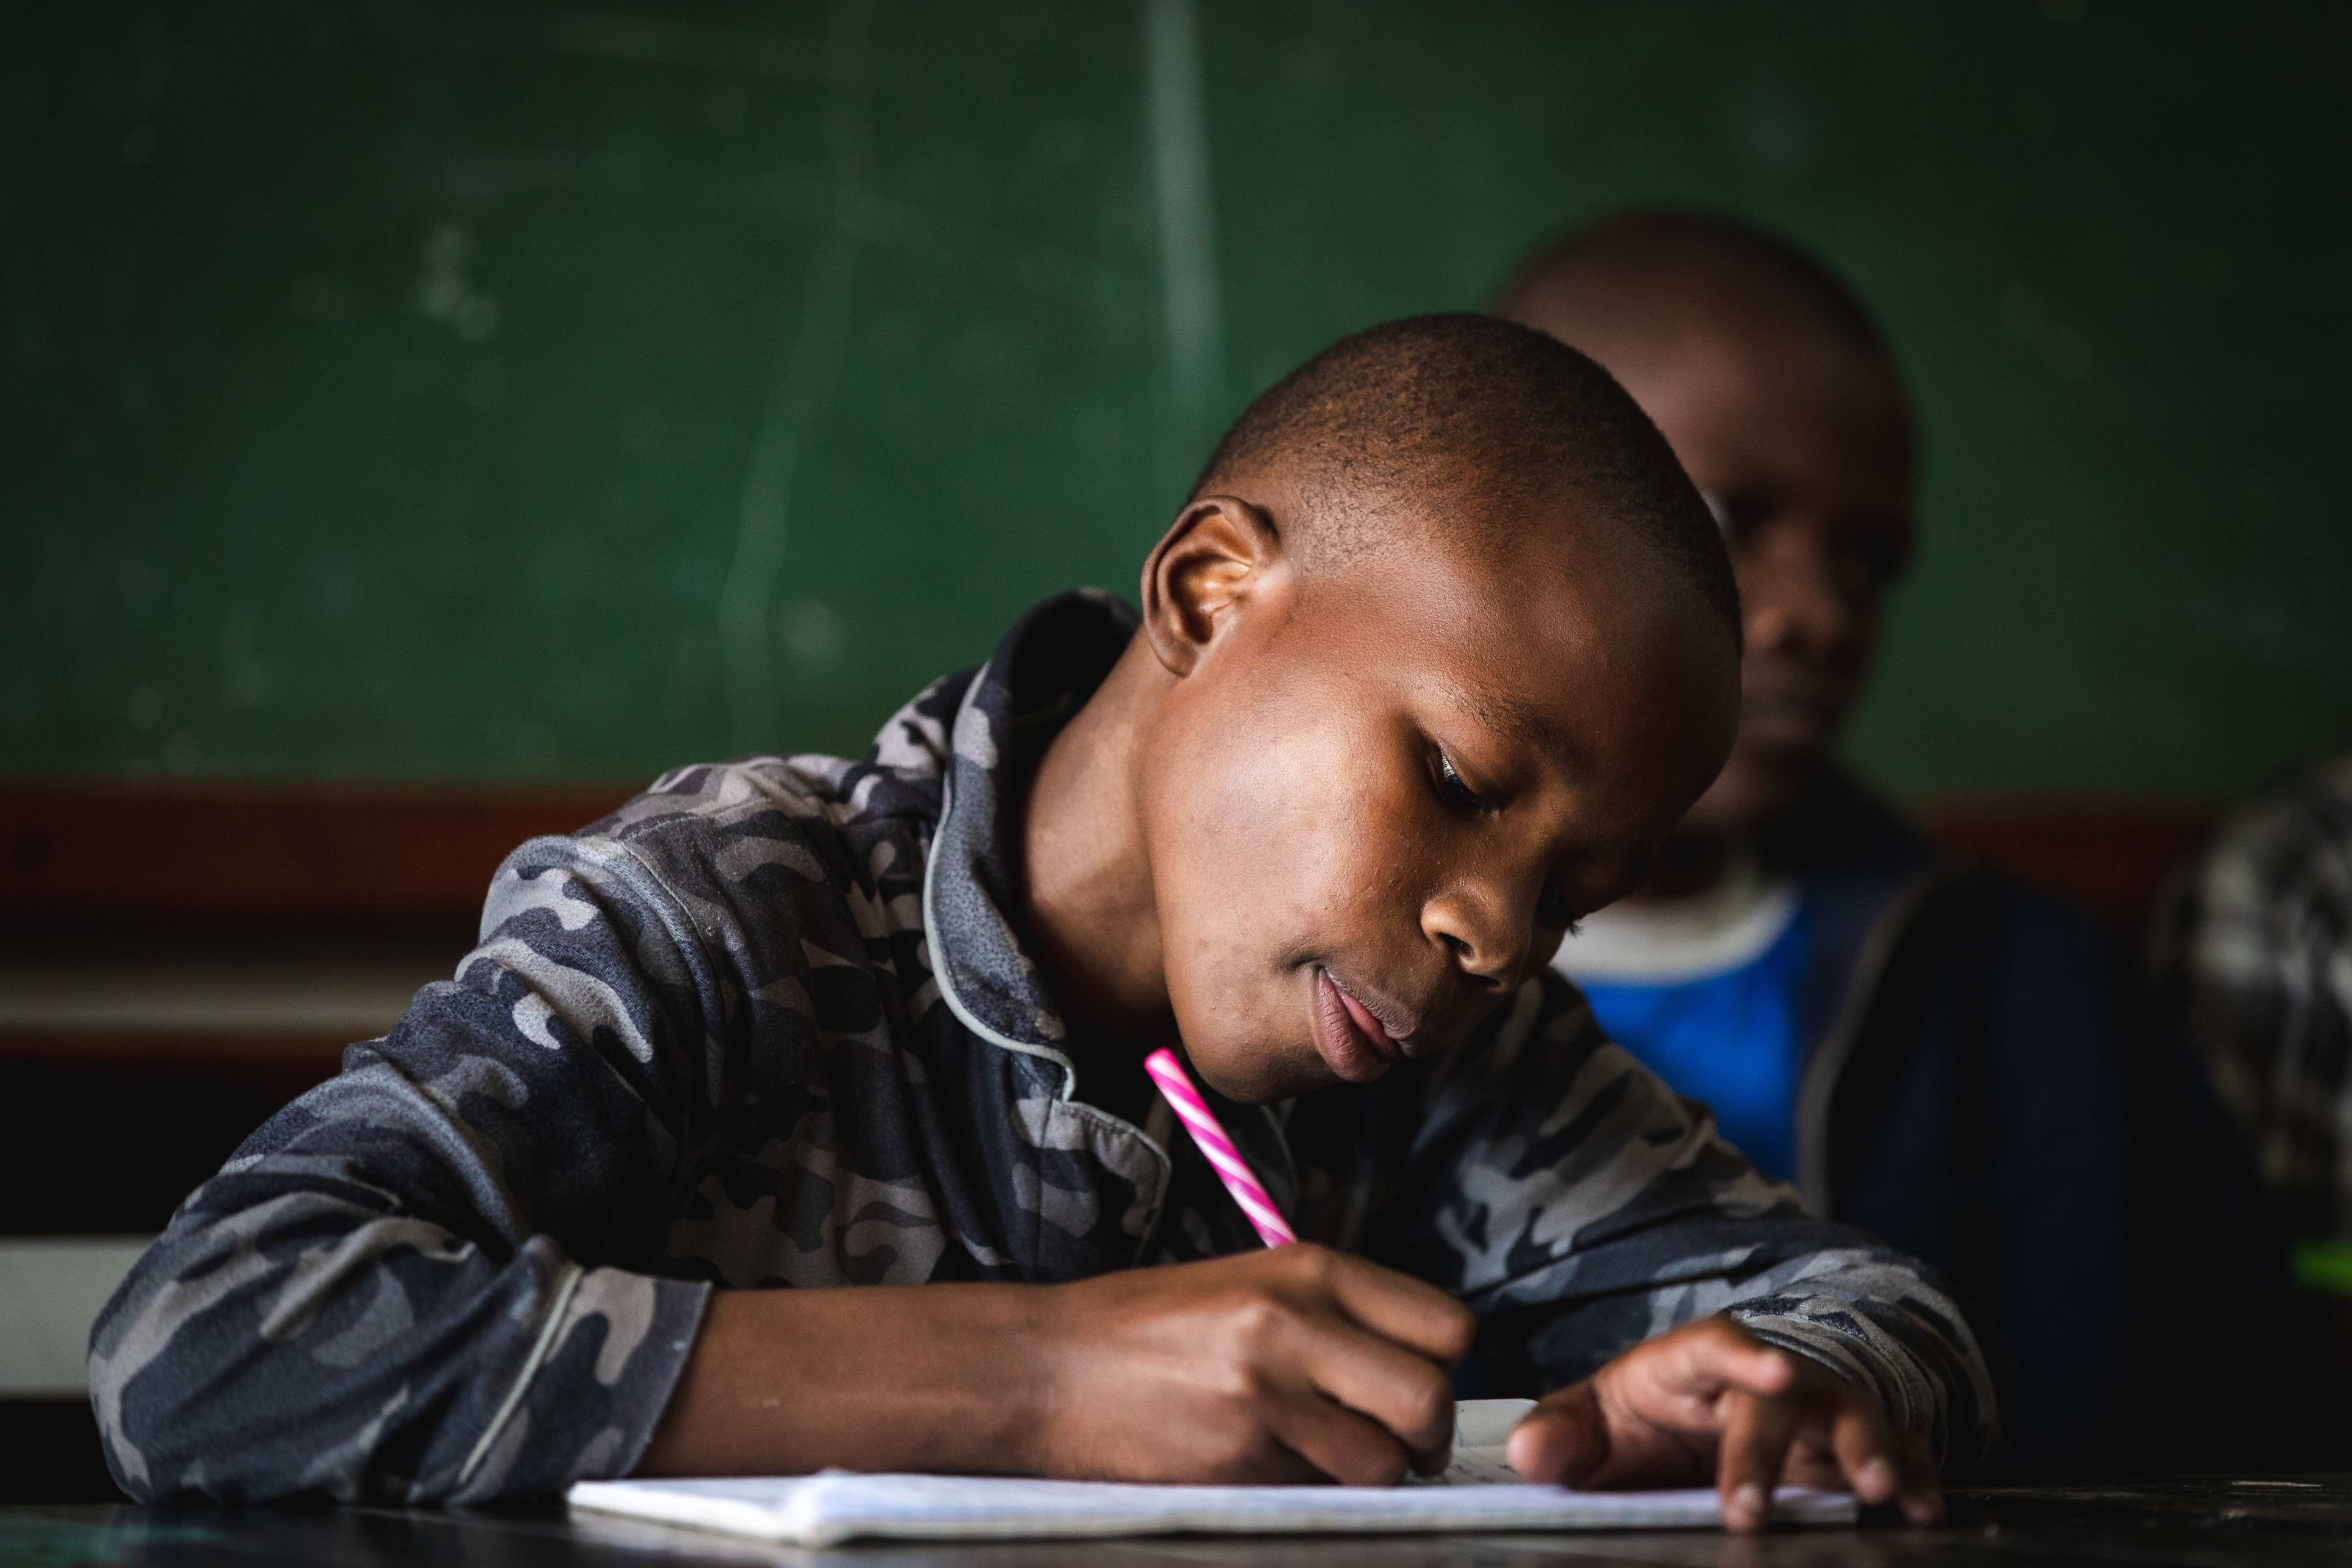 Kenianisches Kind notiert  etwas in einem Heft (Quelle: Lars Heidrich)